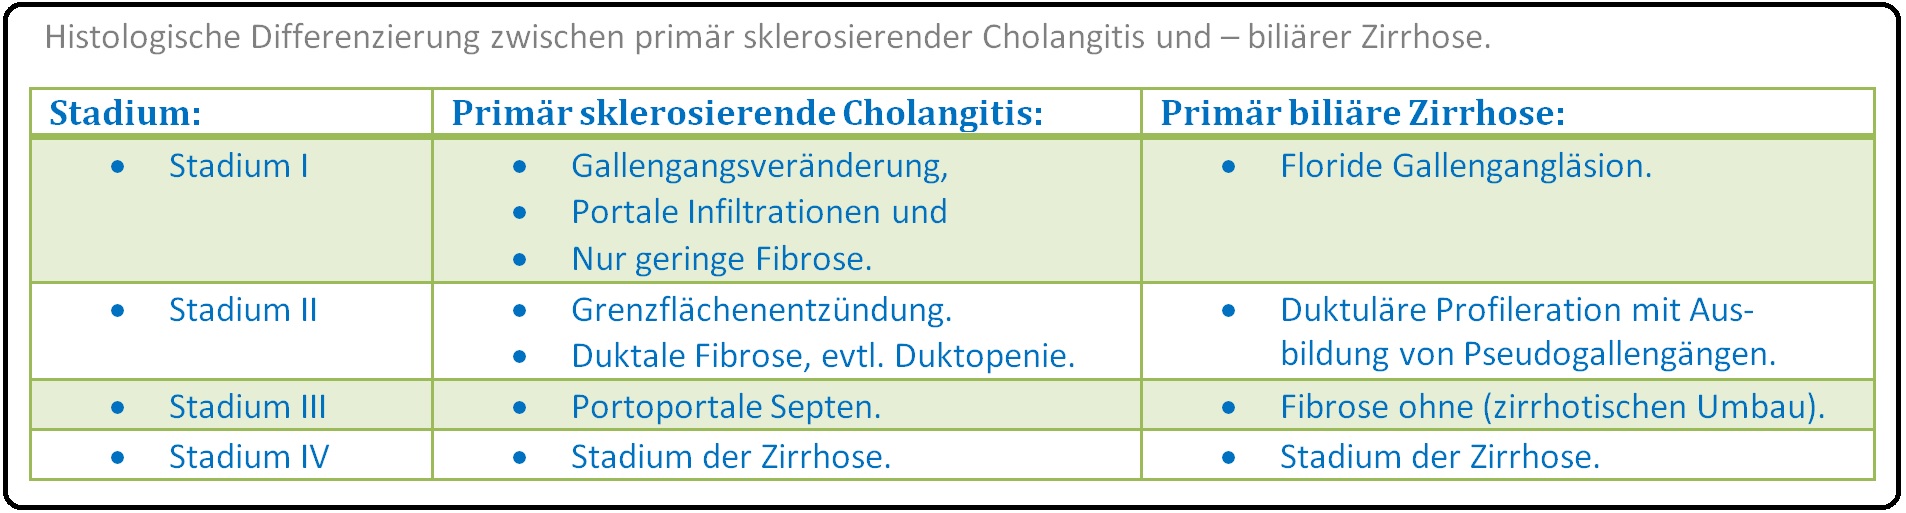 541 Histologische Differenzierung zwischen primär sklerosierender Cholangitis und